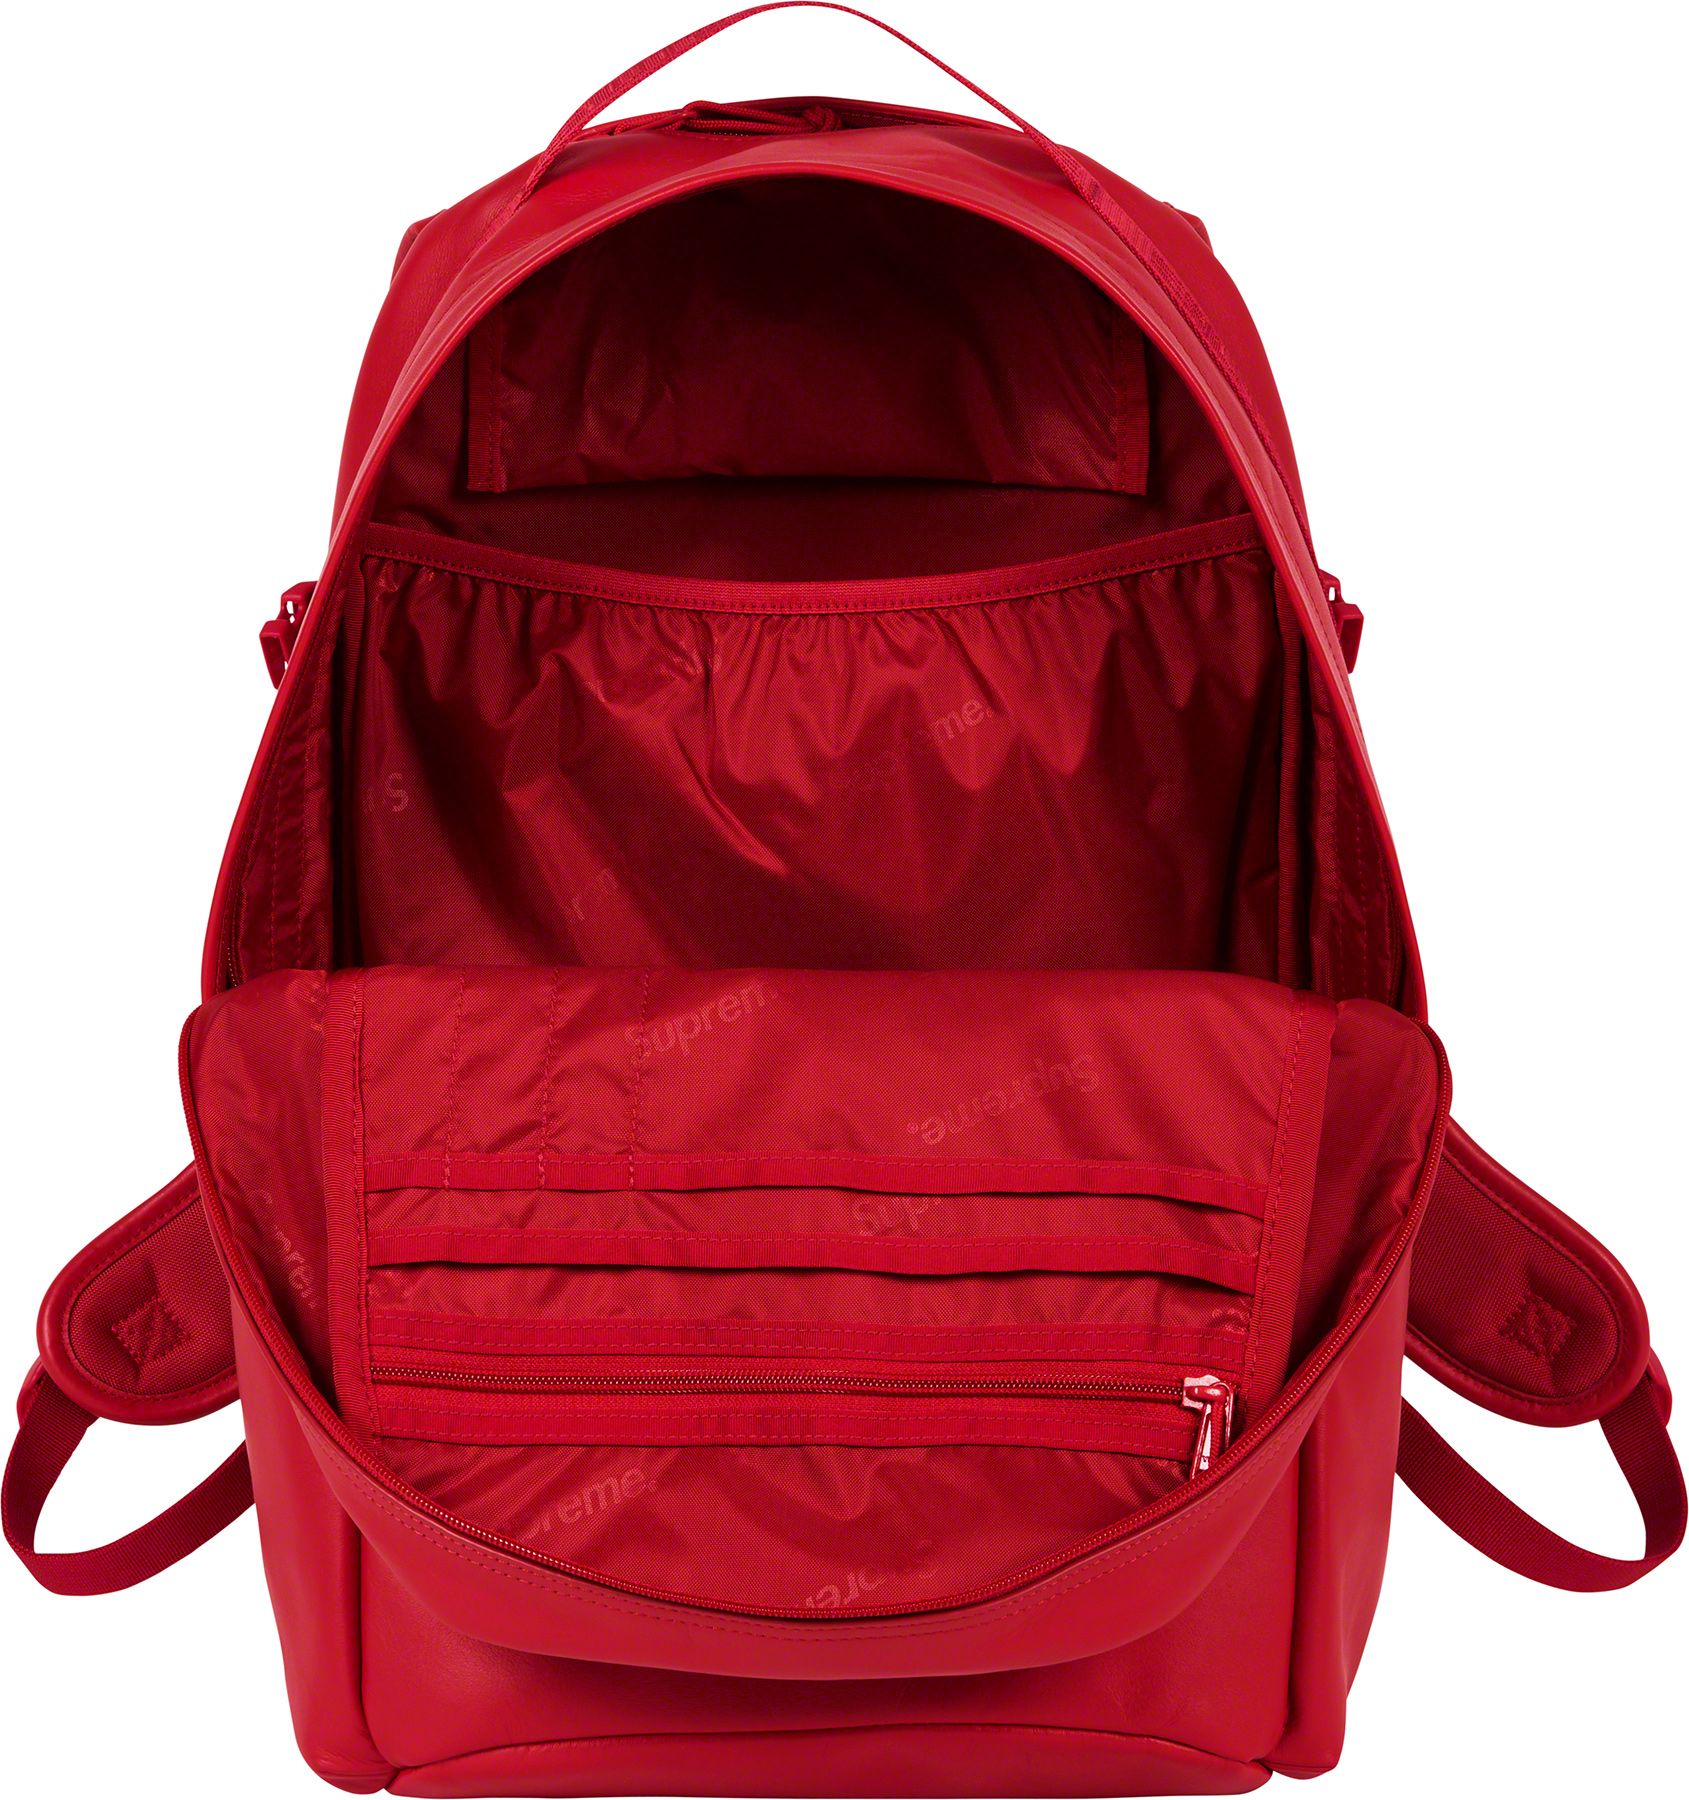 Leather Backpack - Shop - Supreme